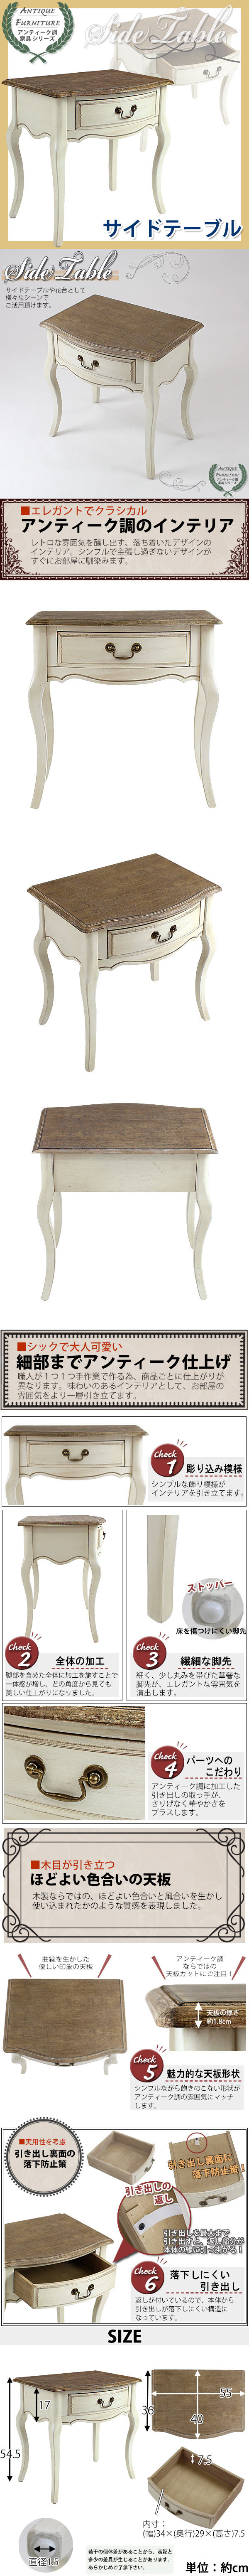 HOT安いアンティーク調 サイドテーブル 木製 家具 白 花台 テーブル サイドテーブル